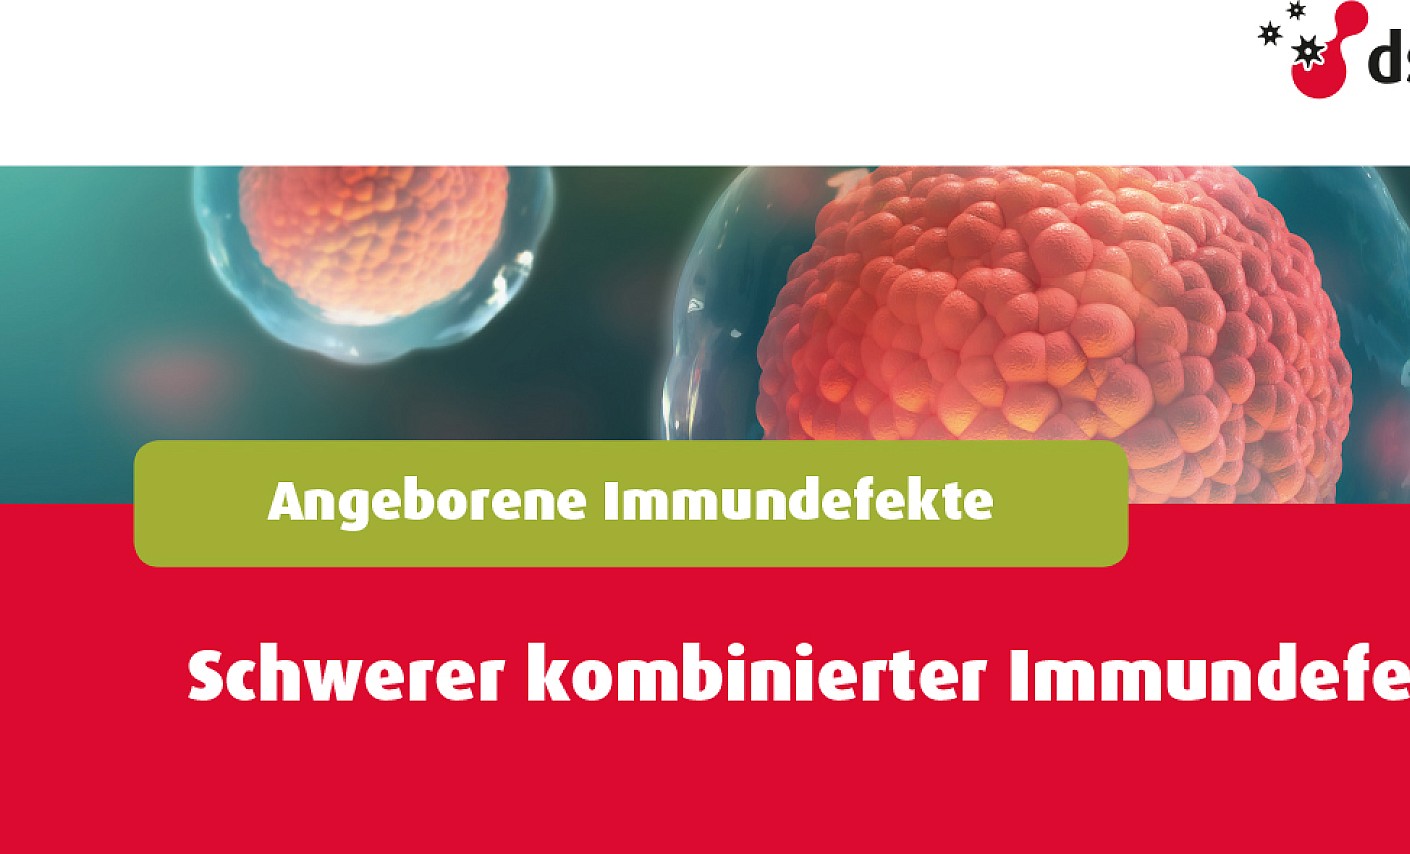 29. April: Am Tag der Immunologie Patienten helfen